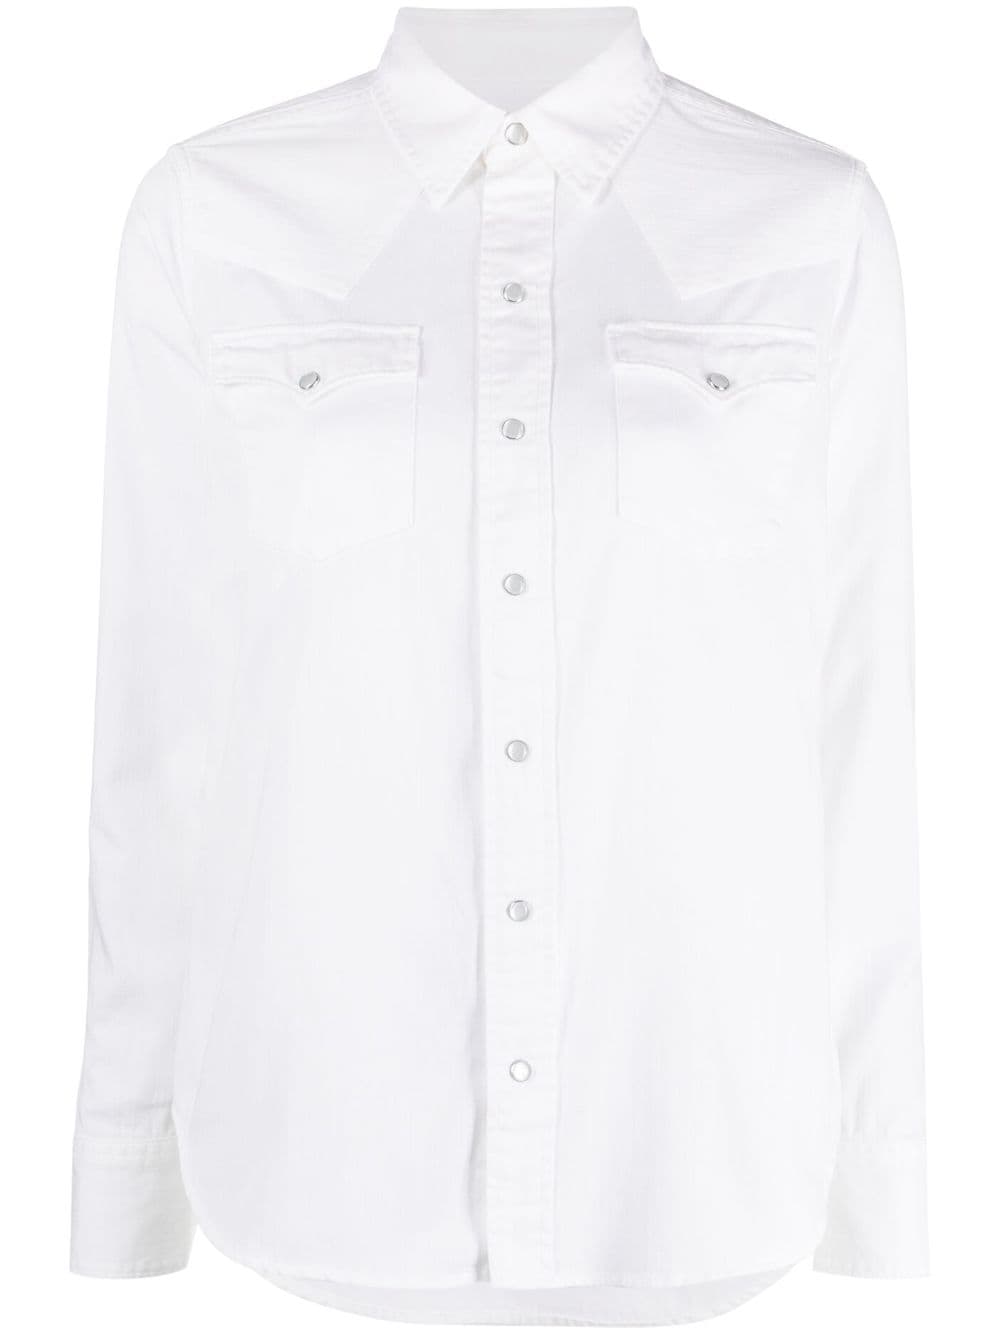 Polo Ralph Lauren cotton trucker shirt - White von Polo Ralph Lauren